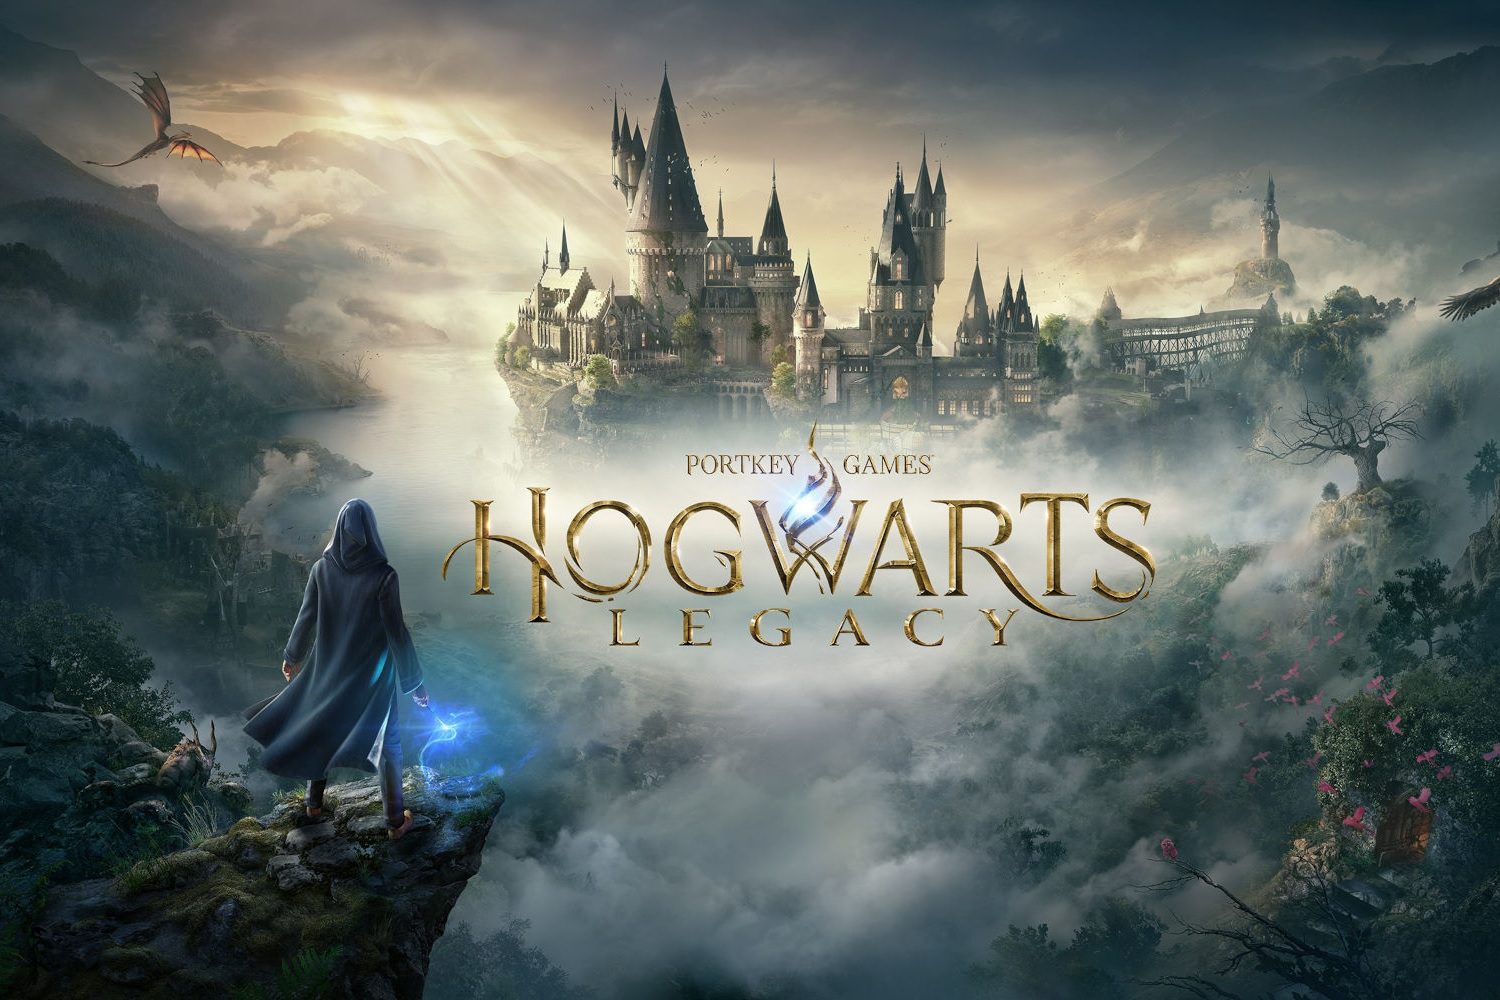 grafika promująca hogwarts legacy